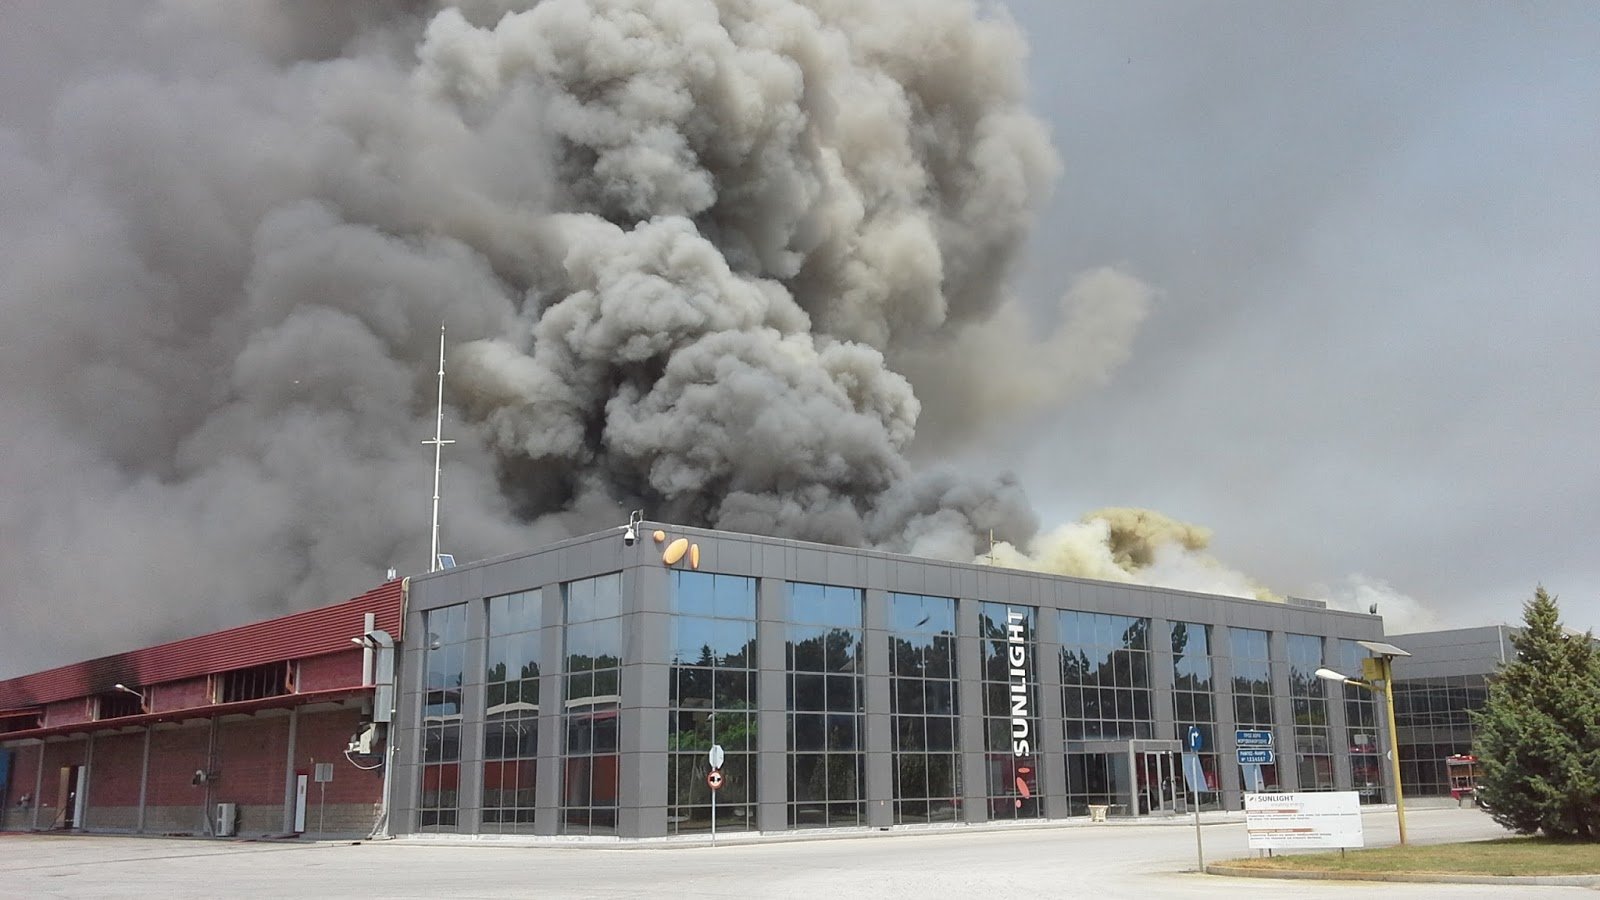 More information about "Ανακοινώθηκαν τα αποτελέσματα από τις μετρήσεις για την ατμοσφαιρική ρύπανση στην Ξάνθη από την πυρκαγιά στο εργοστάσιο μπαταριών"